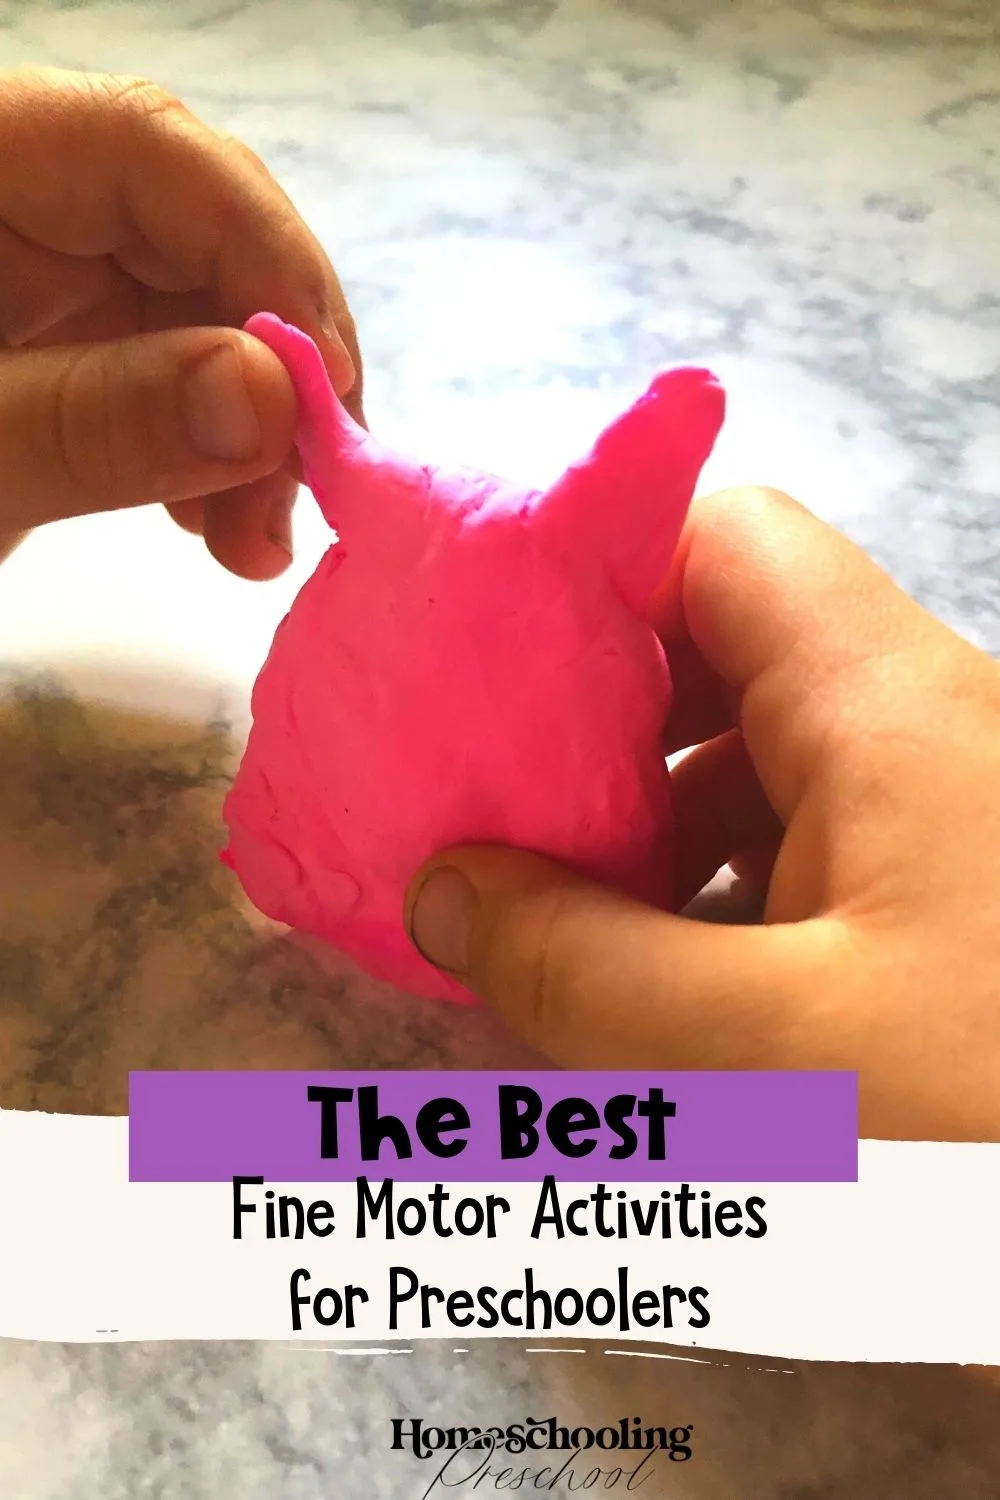 The Best Fine Motor Activities for Preschoolers